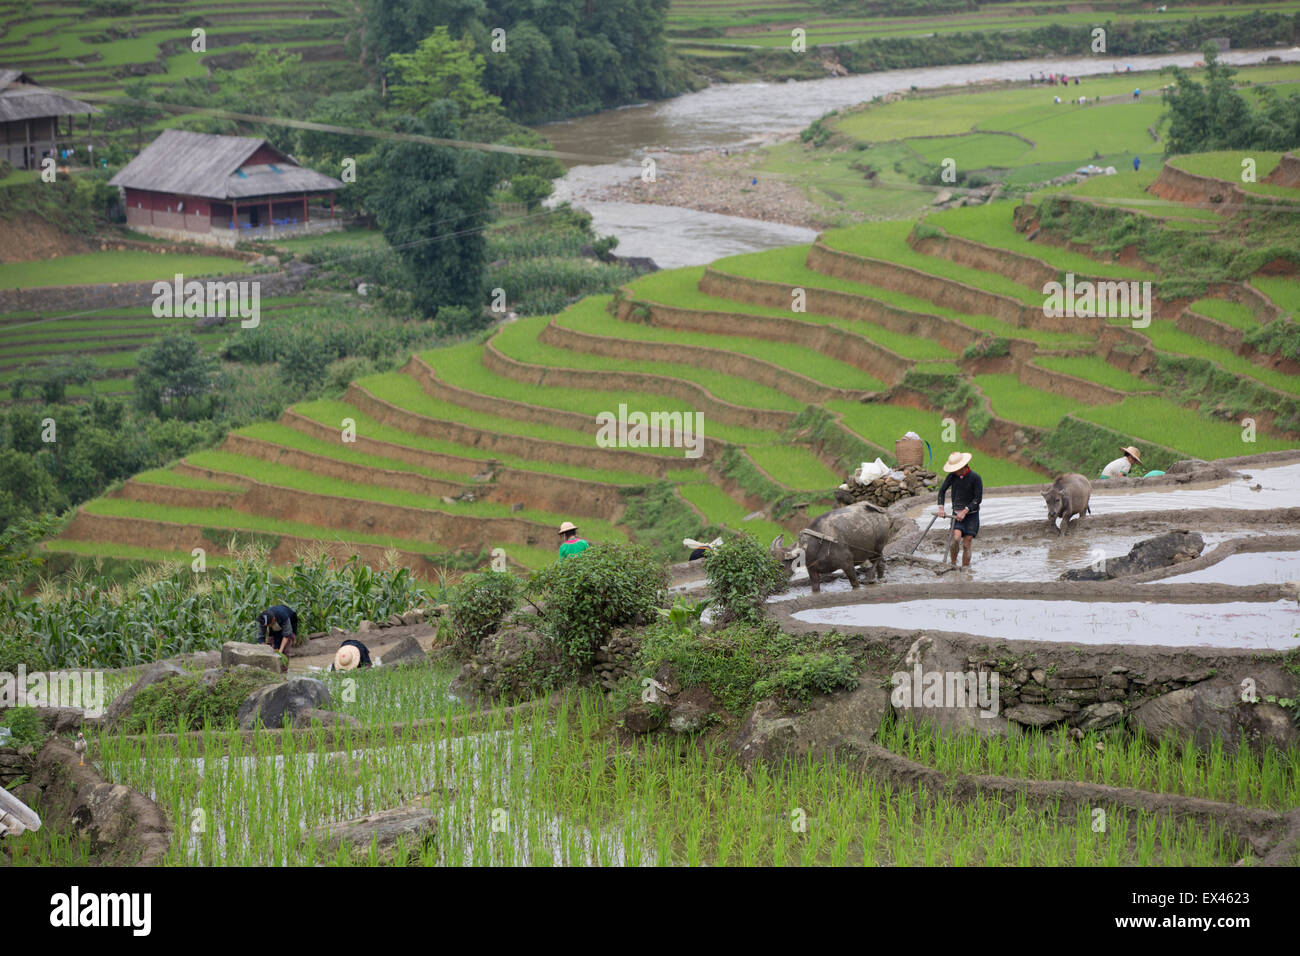 Los agricultores plantan arroz durante la estación de lluvias con un búfalo de agua dibujado el arado cerca de Sapa, Vietnam Foto de stock